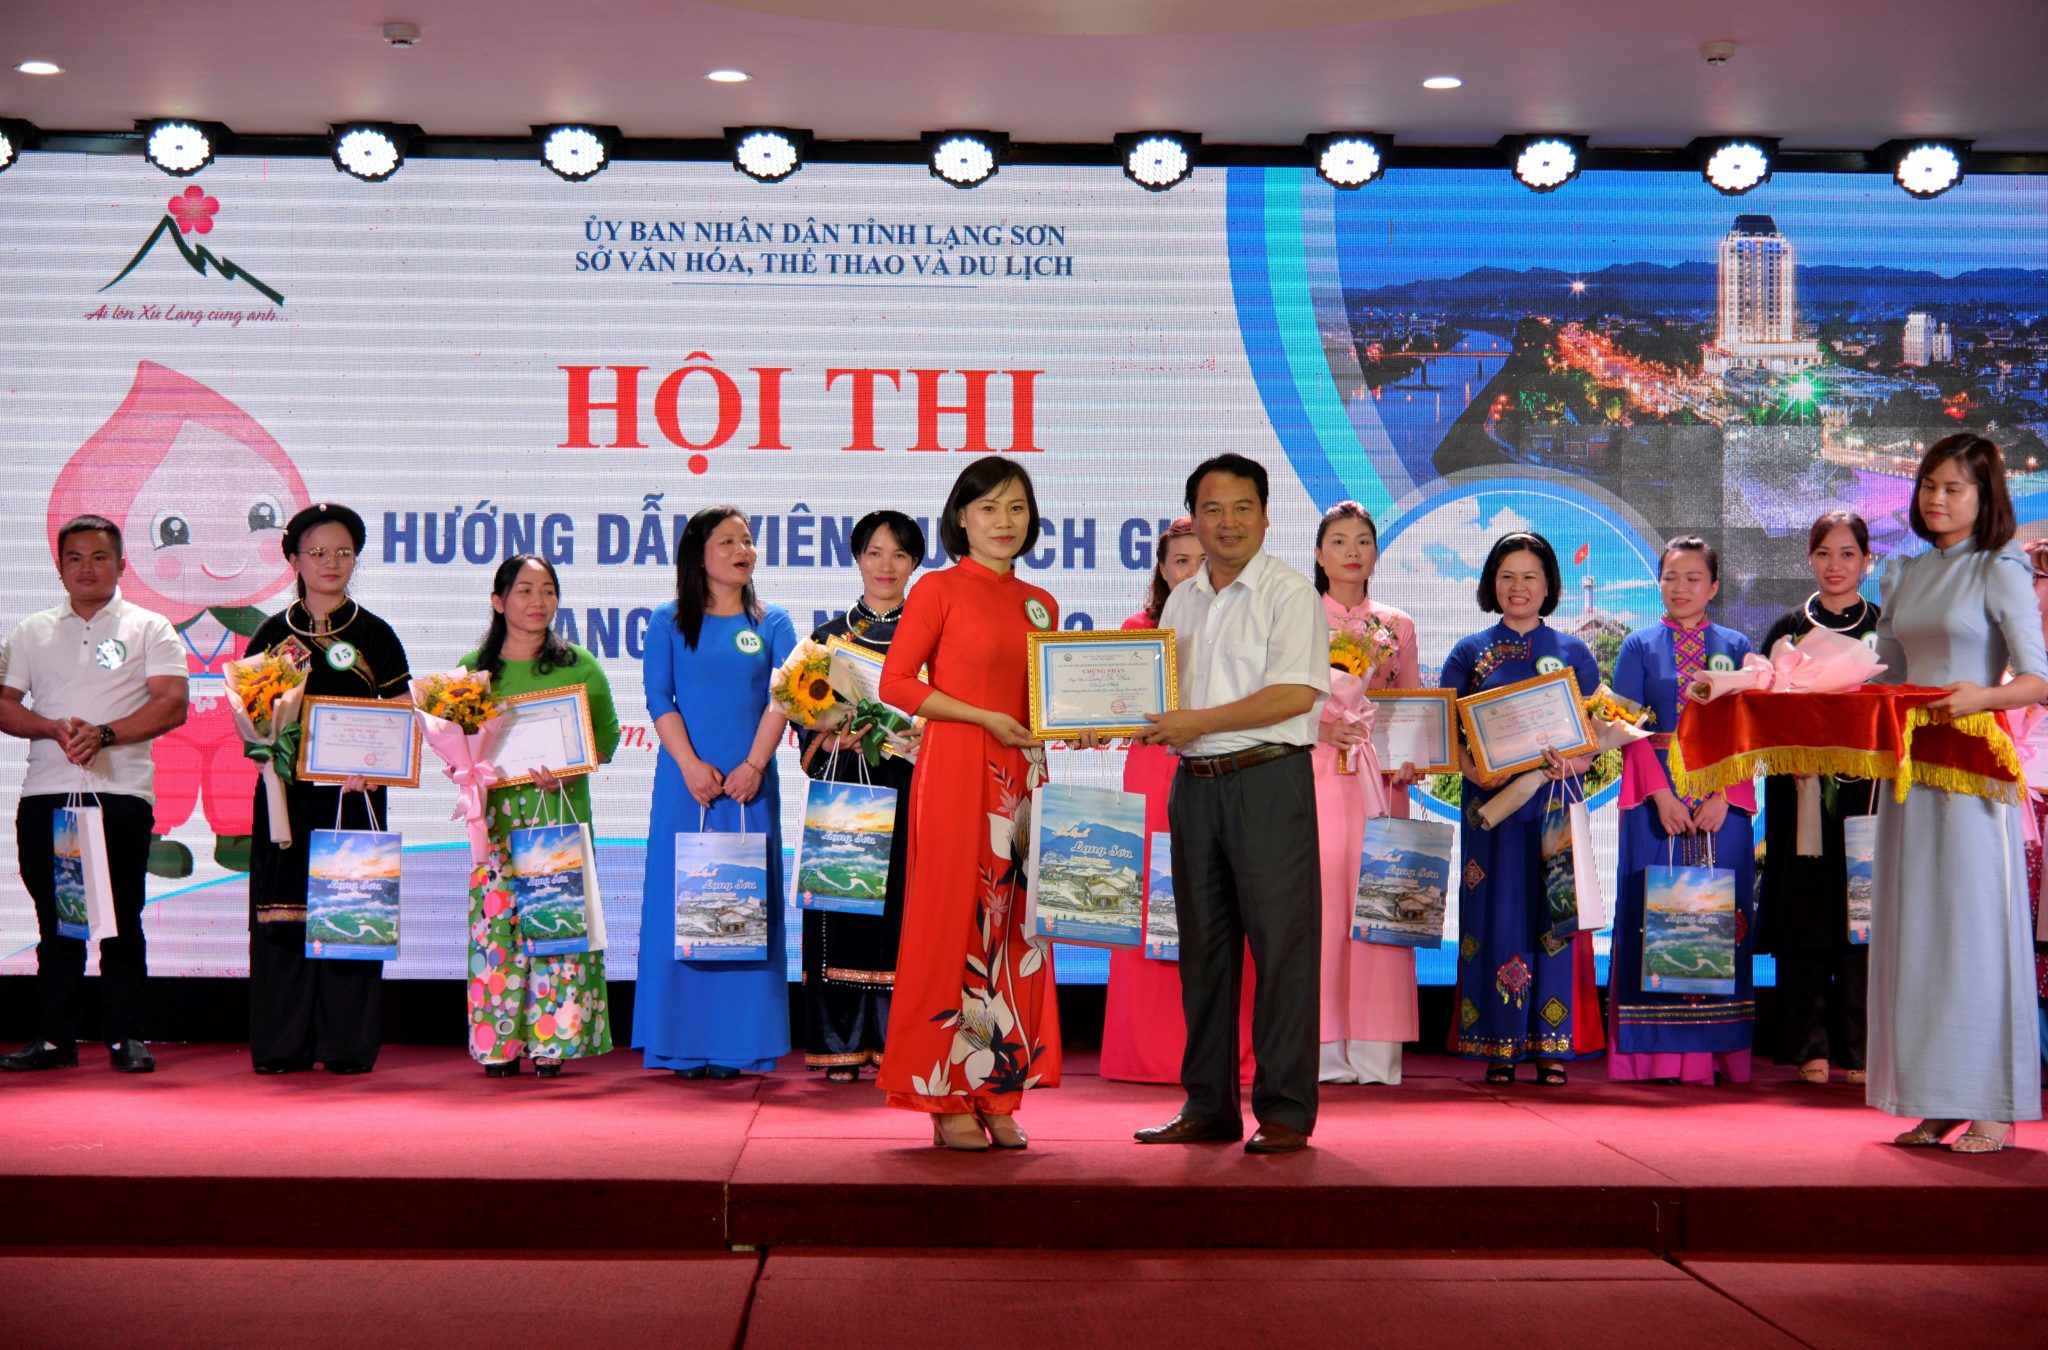 Sở Văn hóa, Thể thao và Du lịch tổ chức Hội thi hướng dẫn viên du lịch giỏi Lạng Sơn năm 2022.